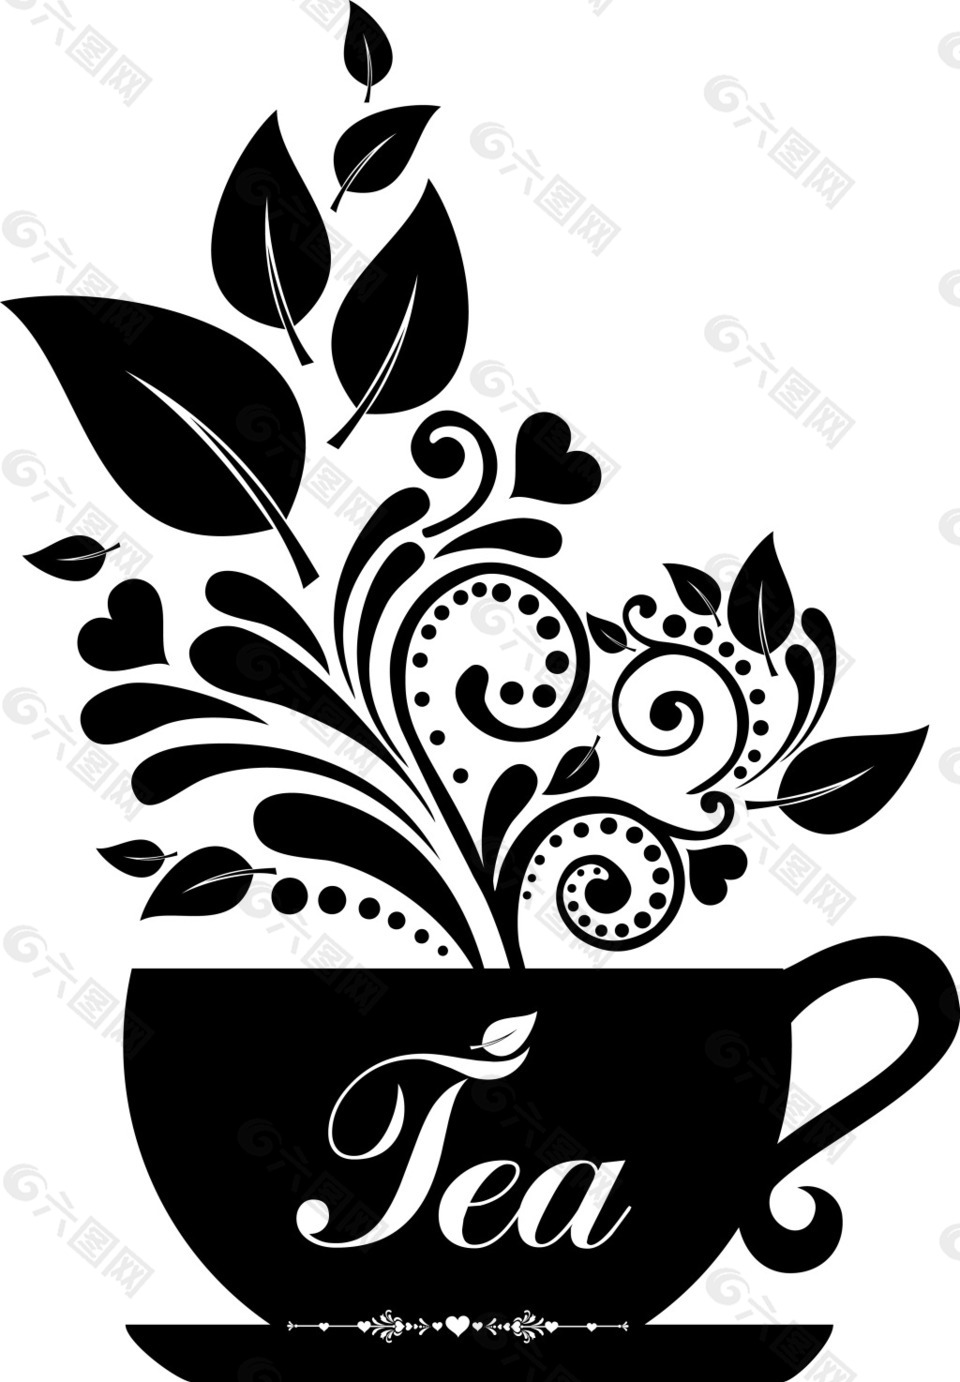 黑白创意茶杯插画设计元素素材免费下载(图片编号:8824238)